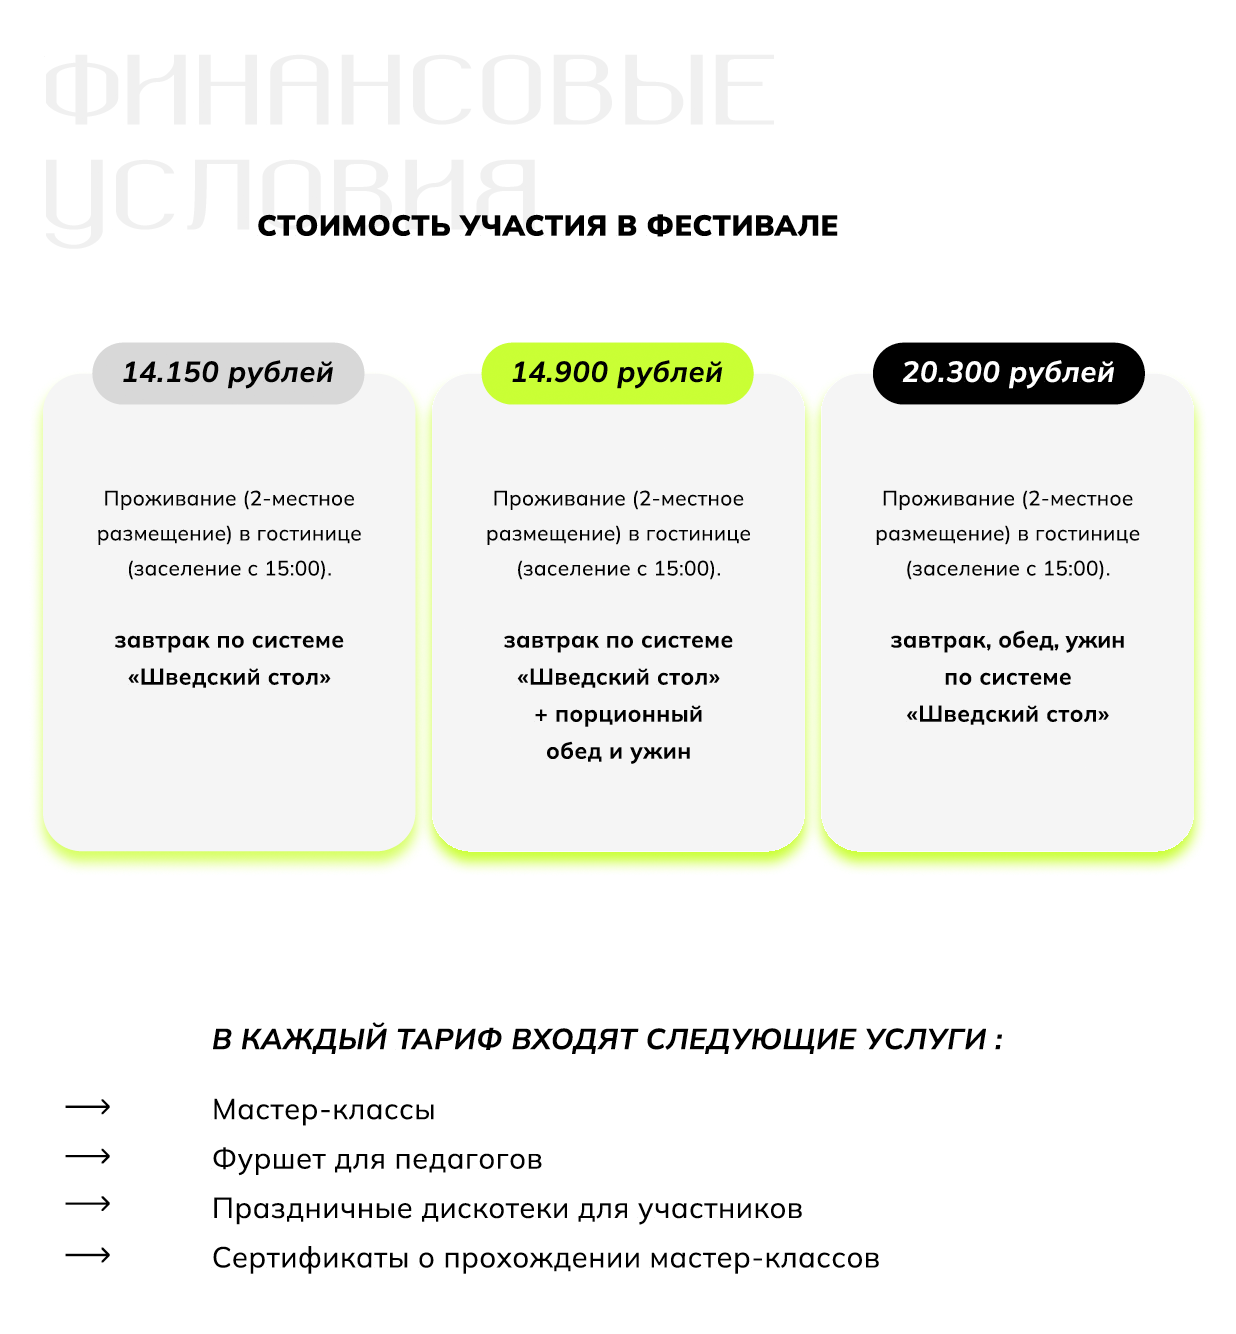 Пример финансовых условий на фестивале. Источник: группа во «Вконтакте» фестиваля «Лаборатория творчества»